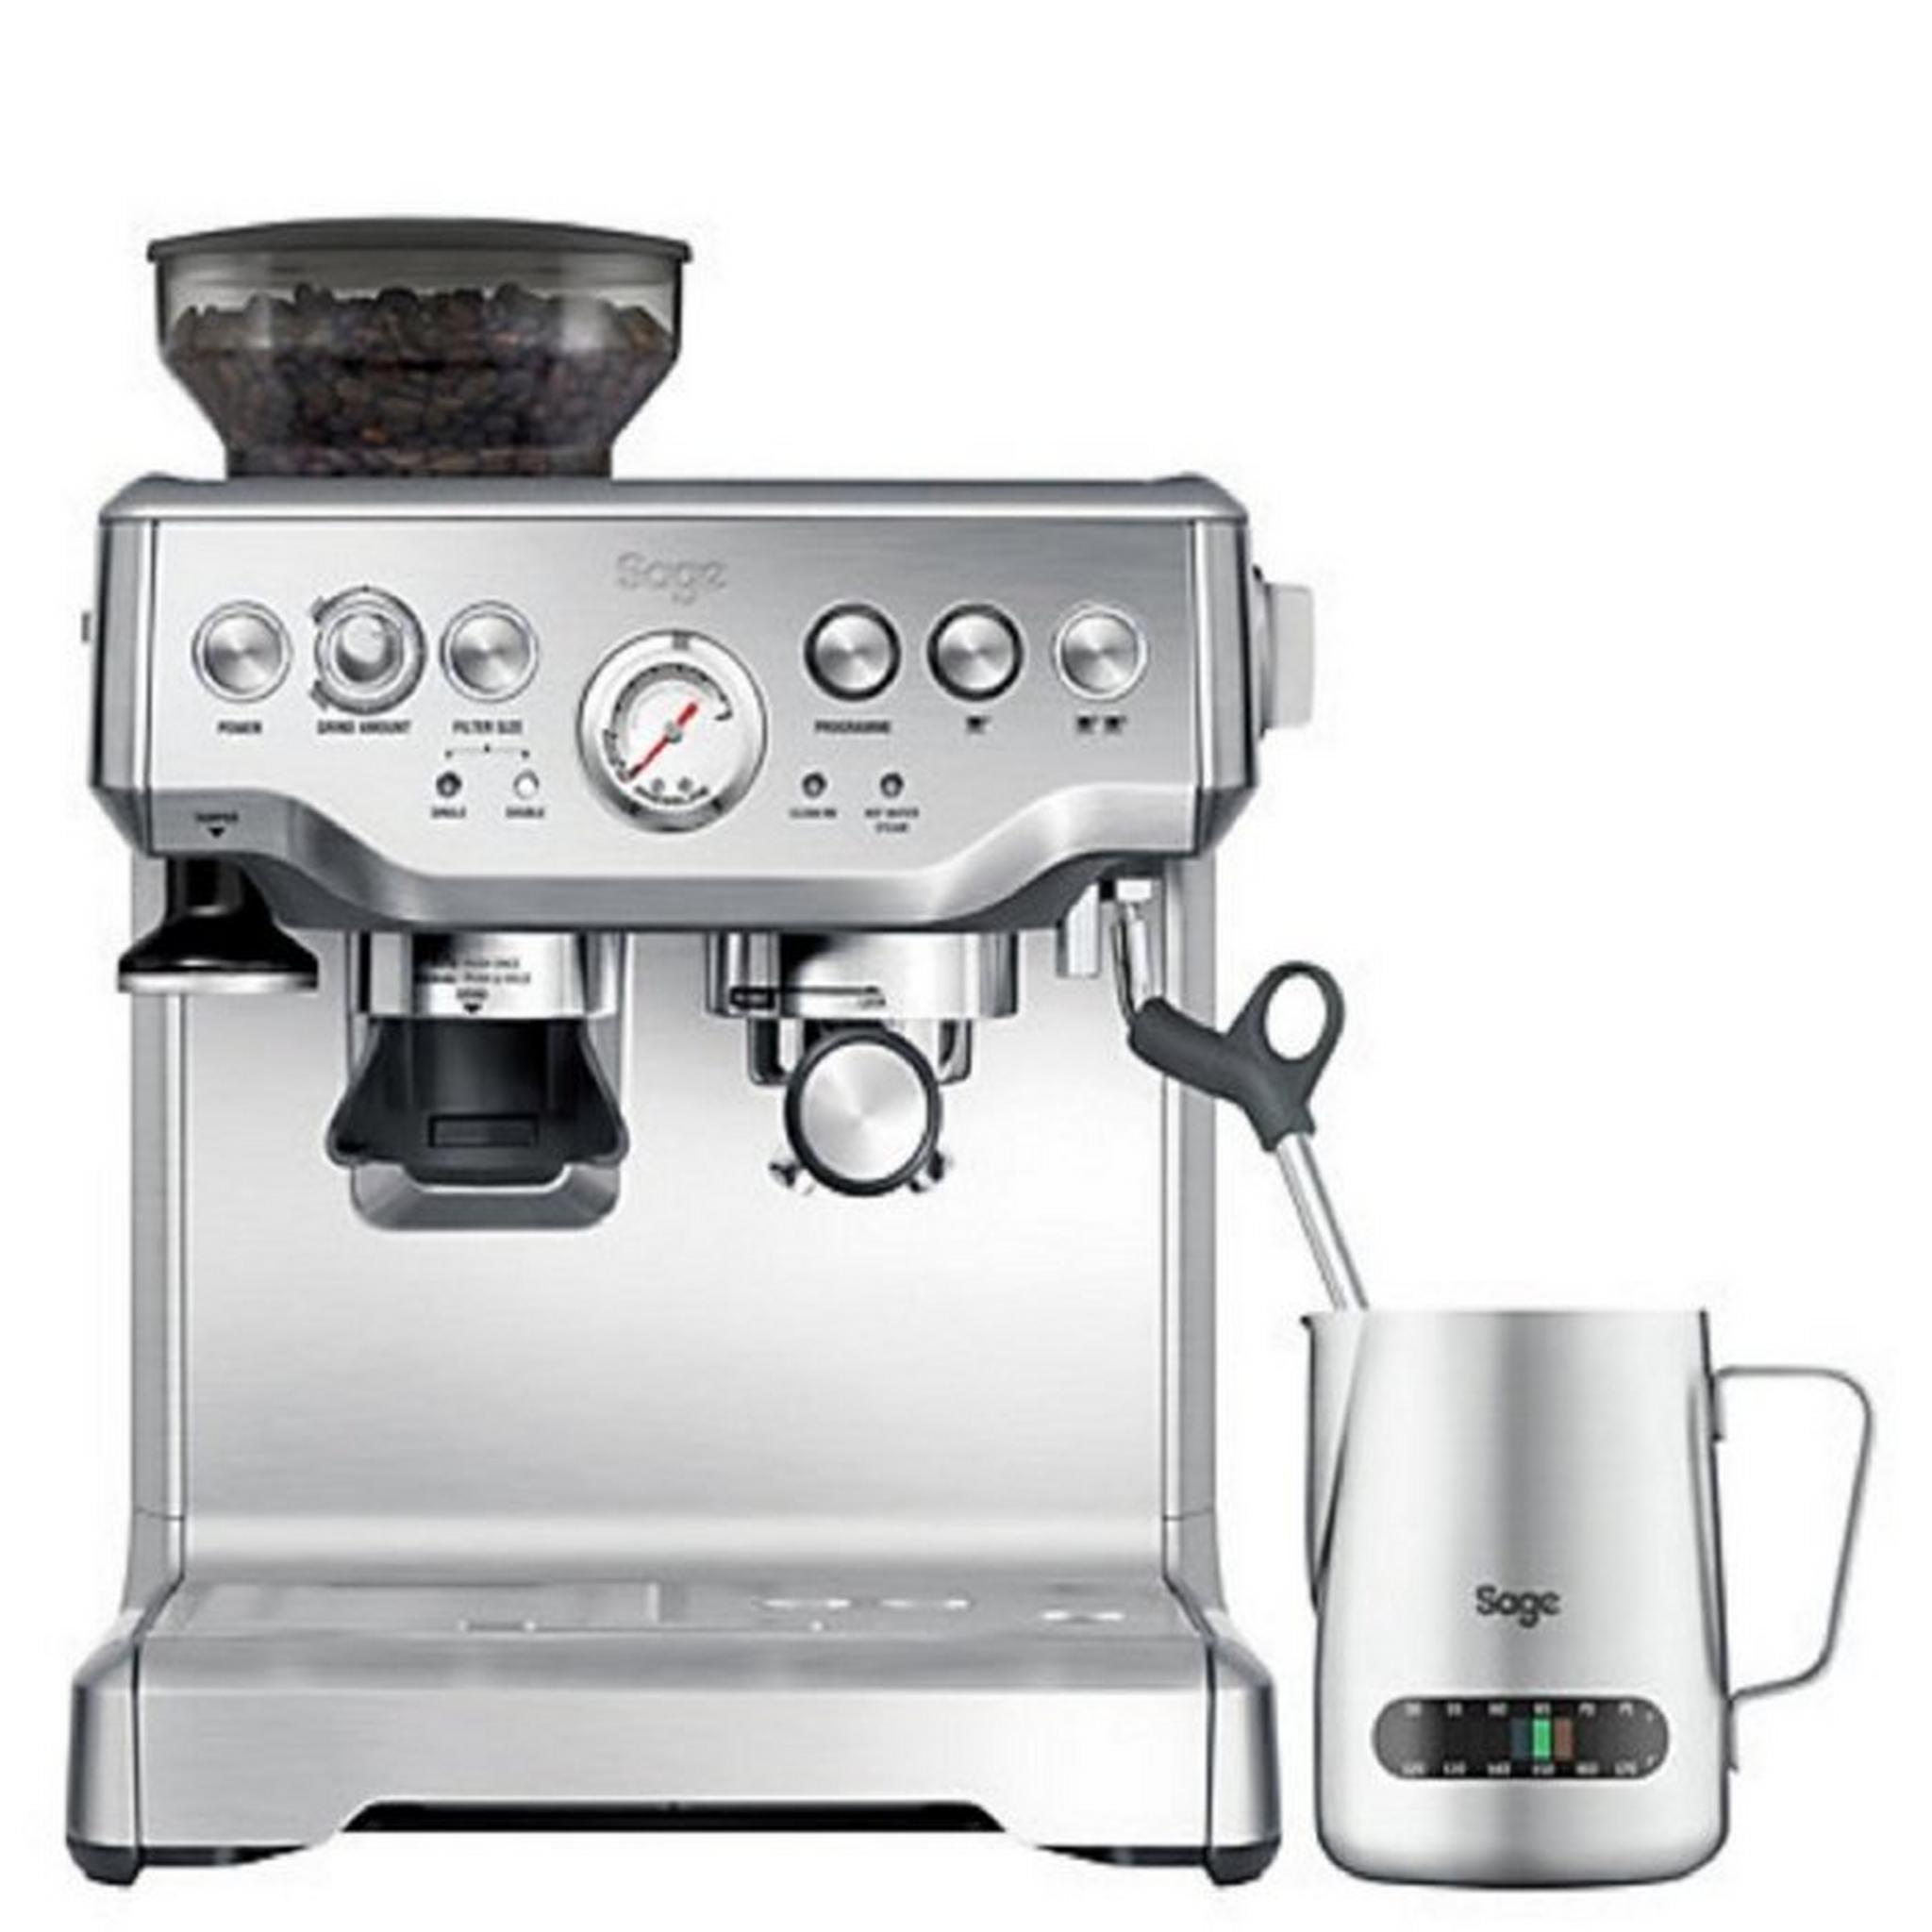 ماكينة صنع القهوة باريستا اكسبرس من سيج، قوة 1850 واط، بسعة 2 لتر، SES875BSS - ستانلس ستيل